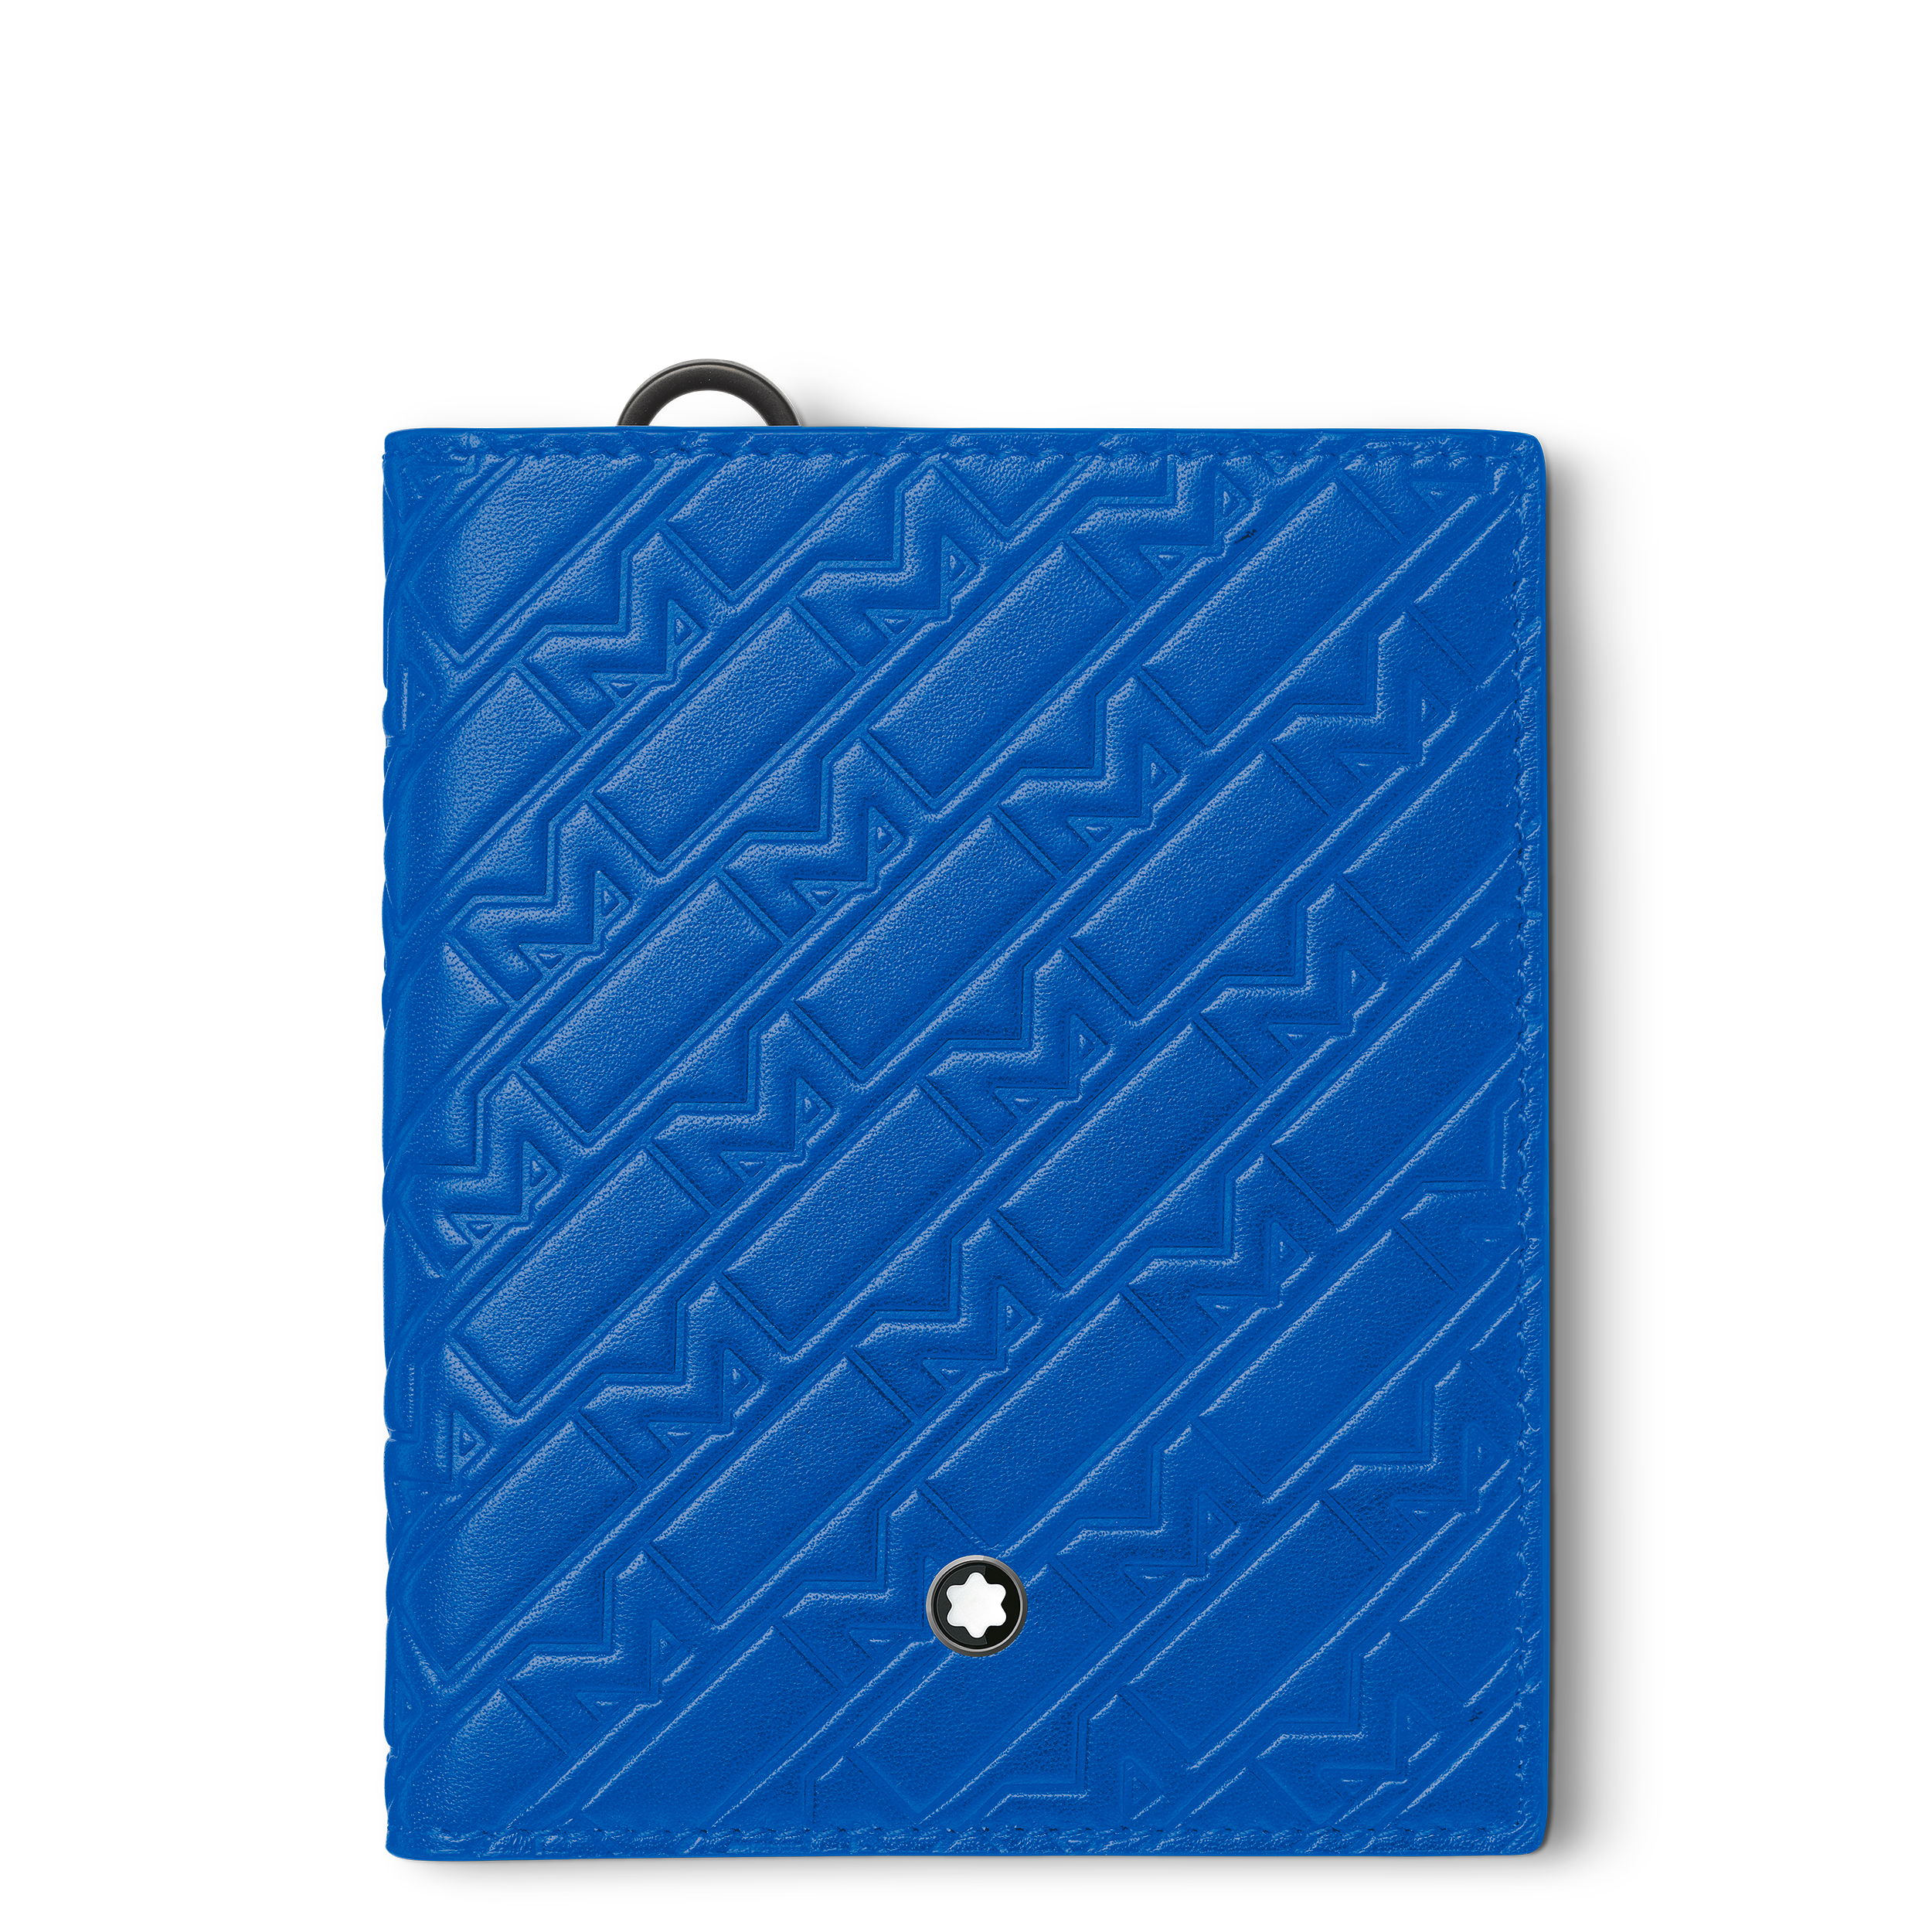 Montblanc M_Gram 4810 compact wallet 6cc, image 1